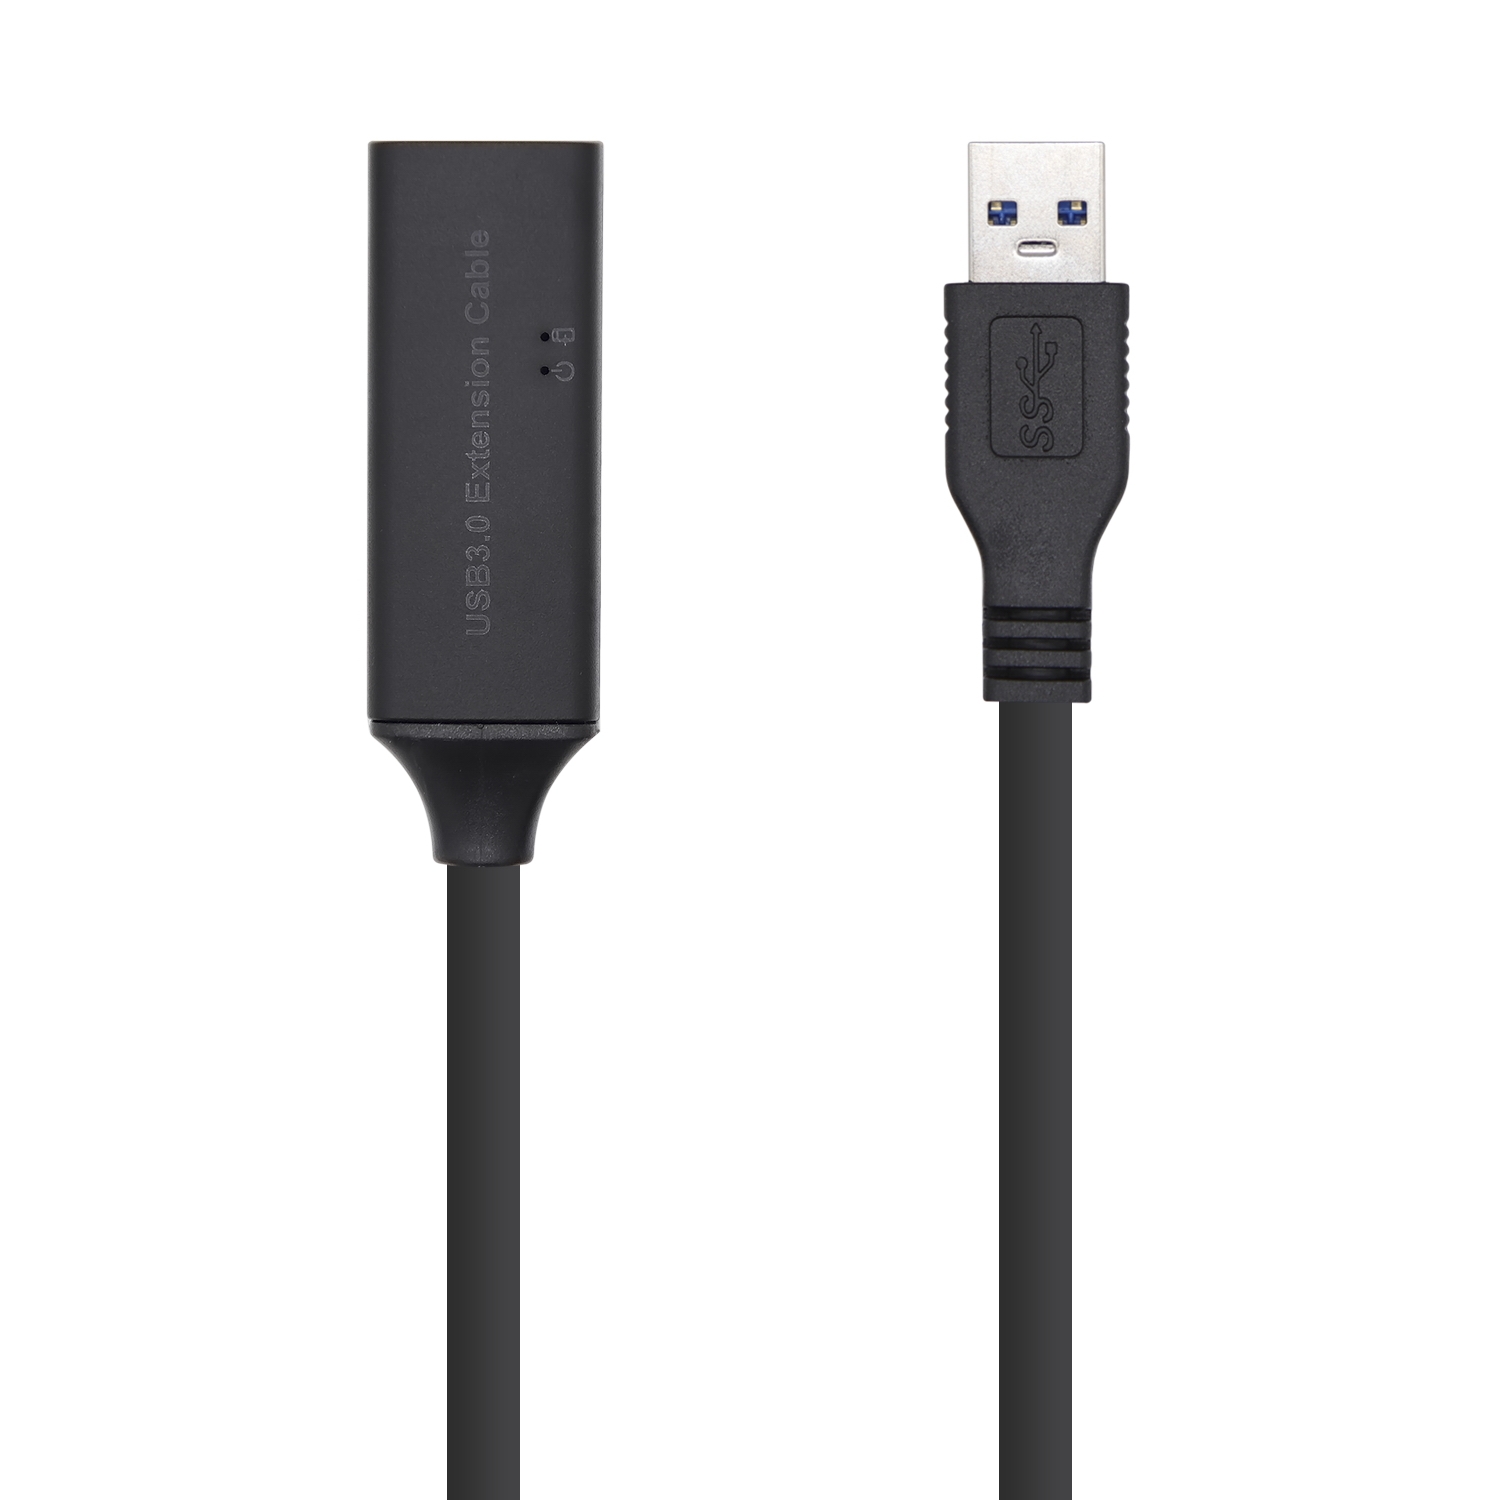 Cable Matters - Cable alargador USB a USB (cable de extensión USB 3.0),  color negro